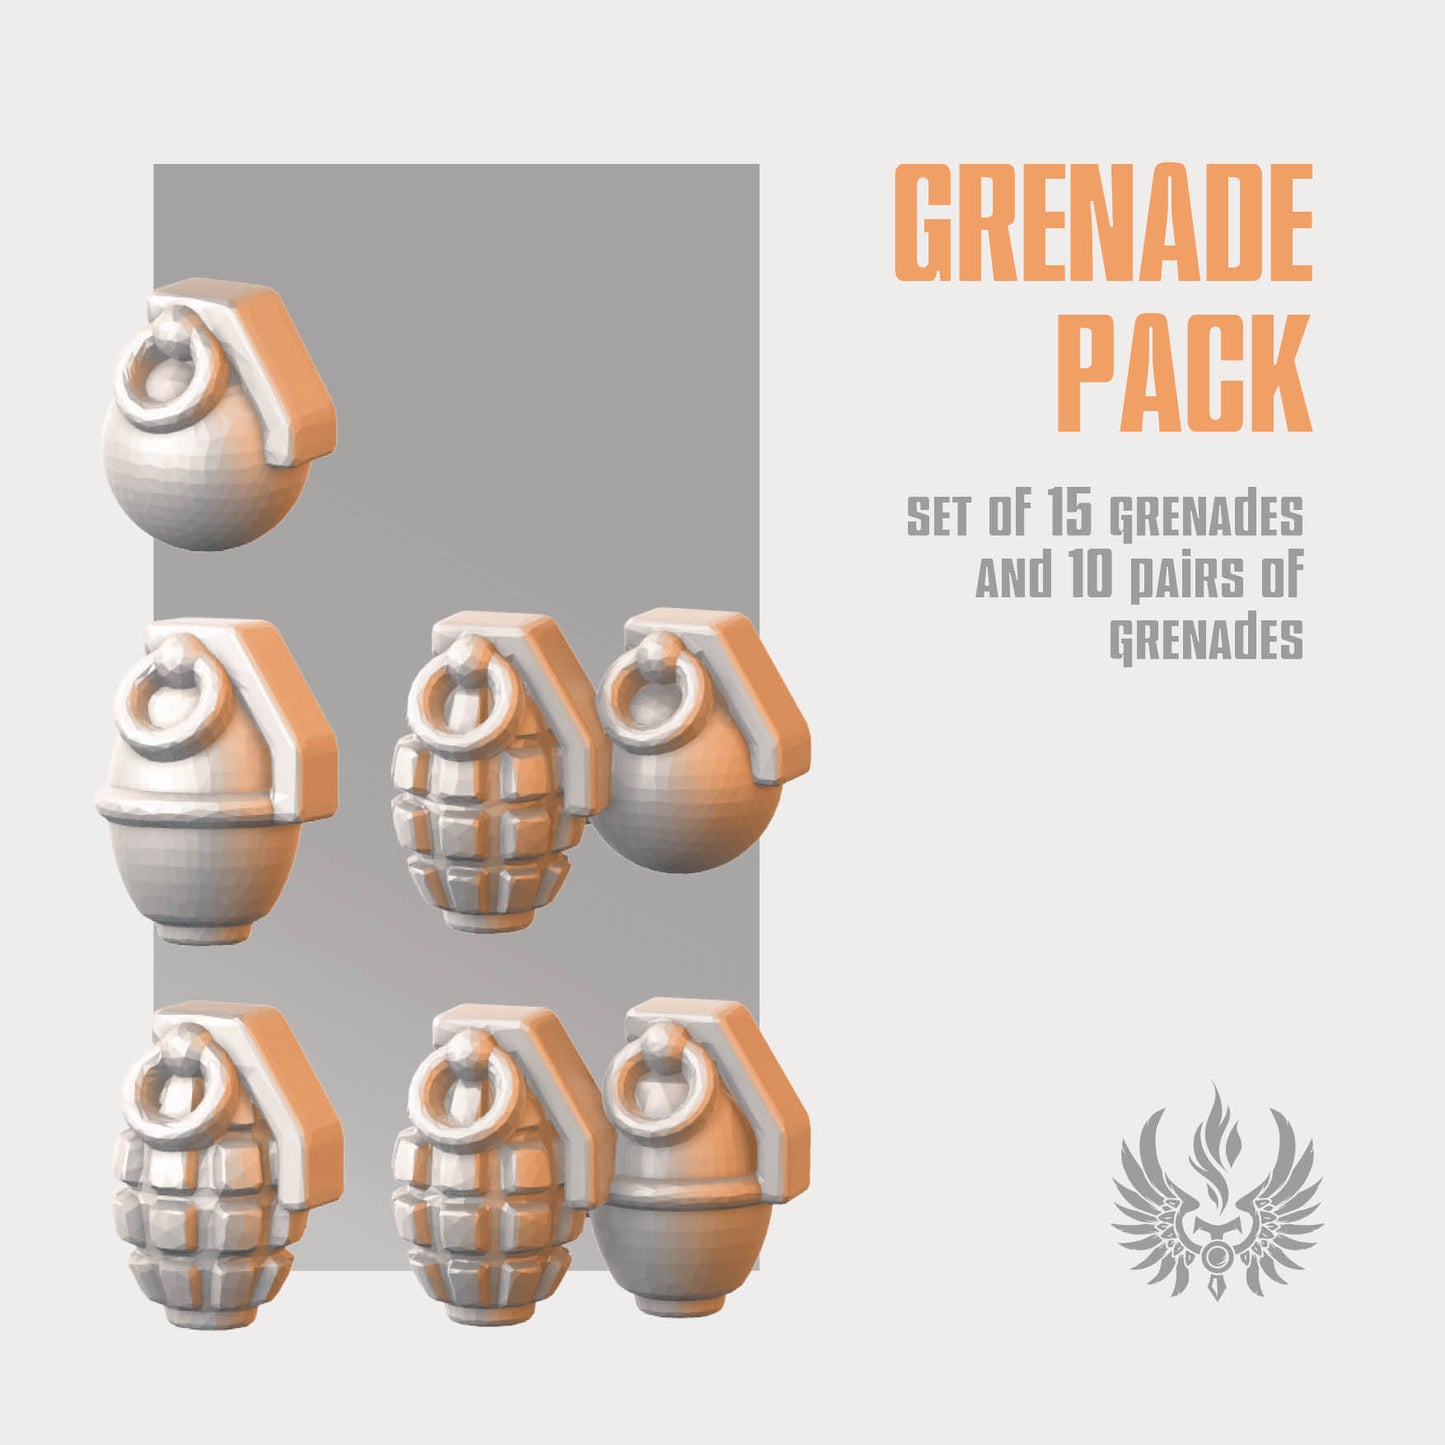 Grenade pack